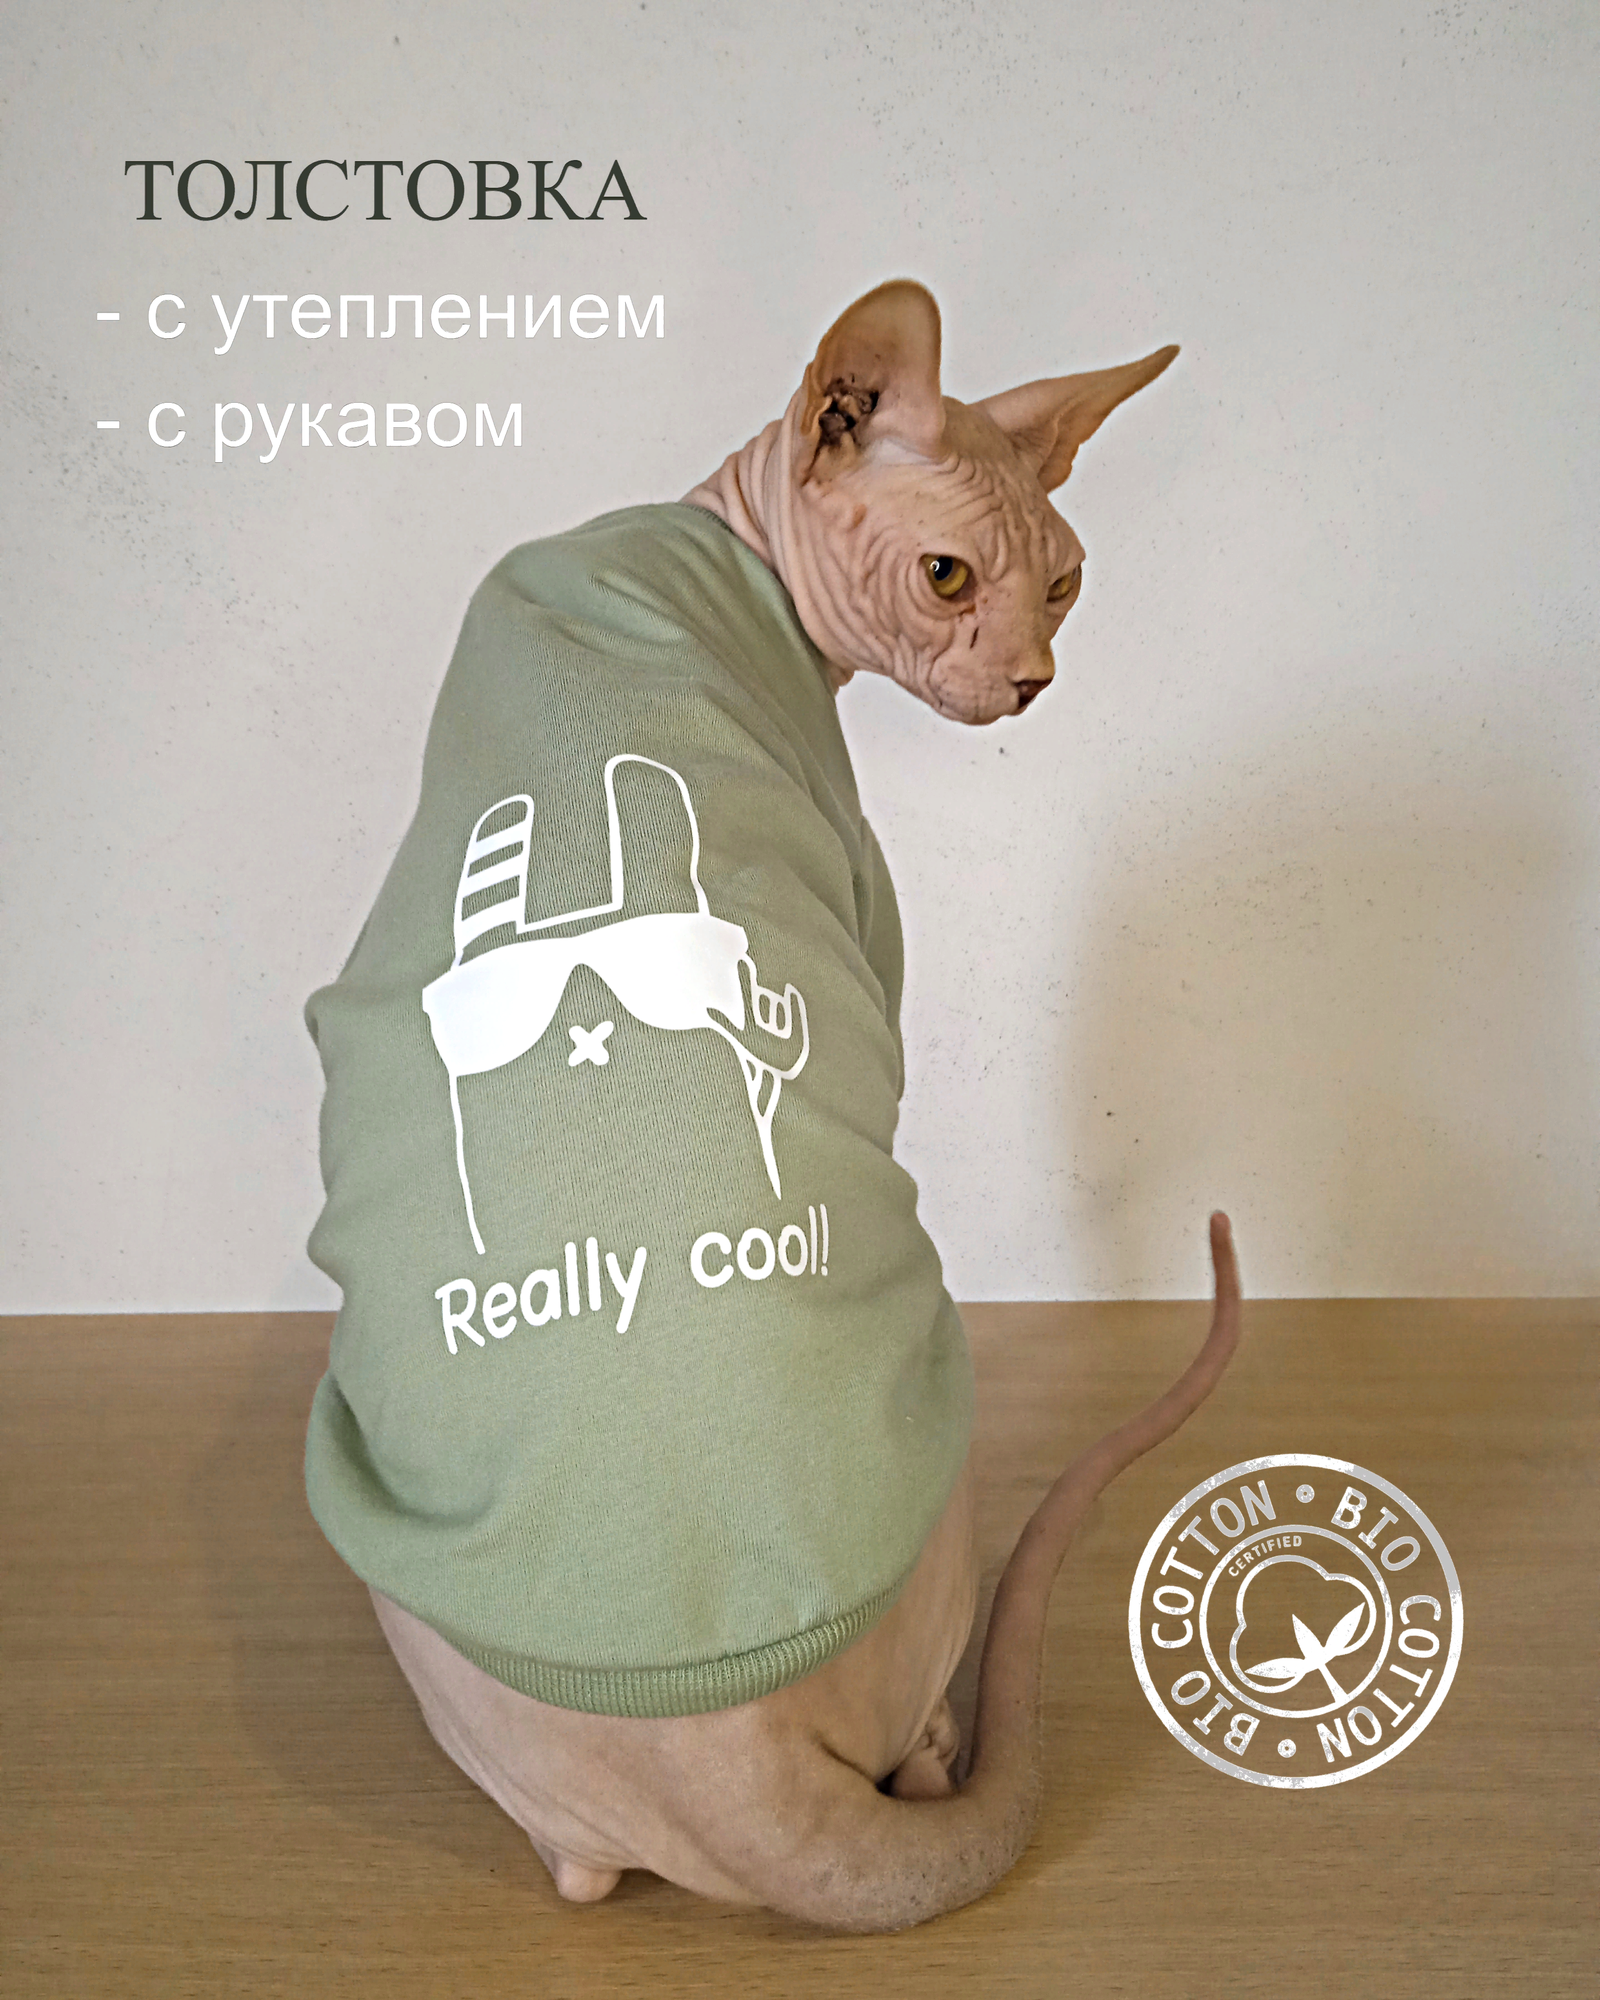 Толстовка "Reali cool" для животных с теплым рукавом от бренда "Котомода" размер М